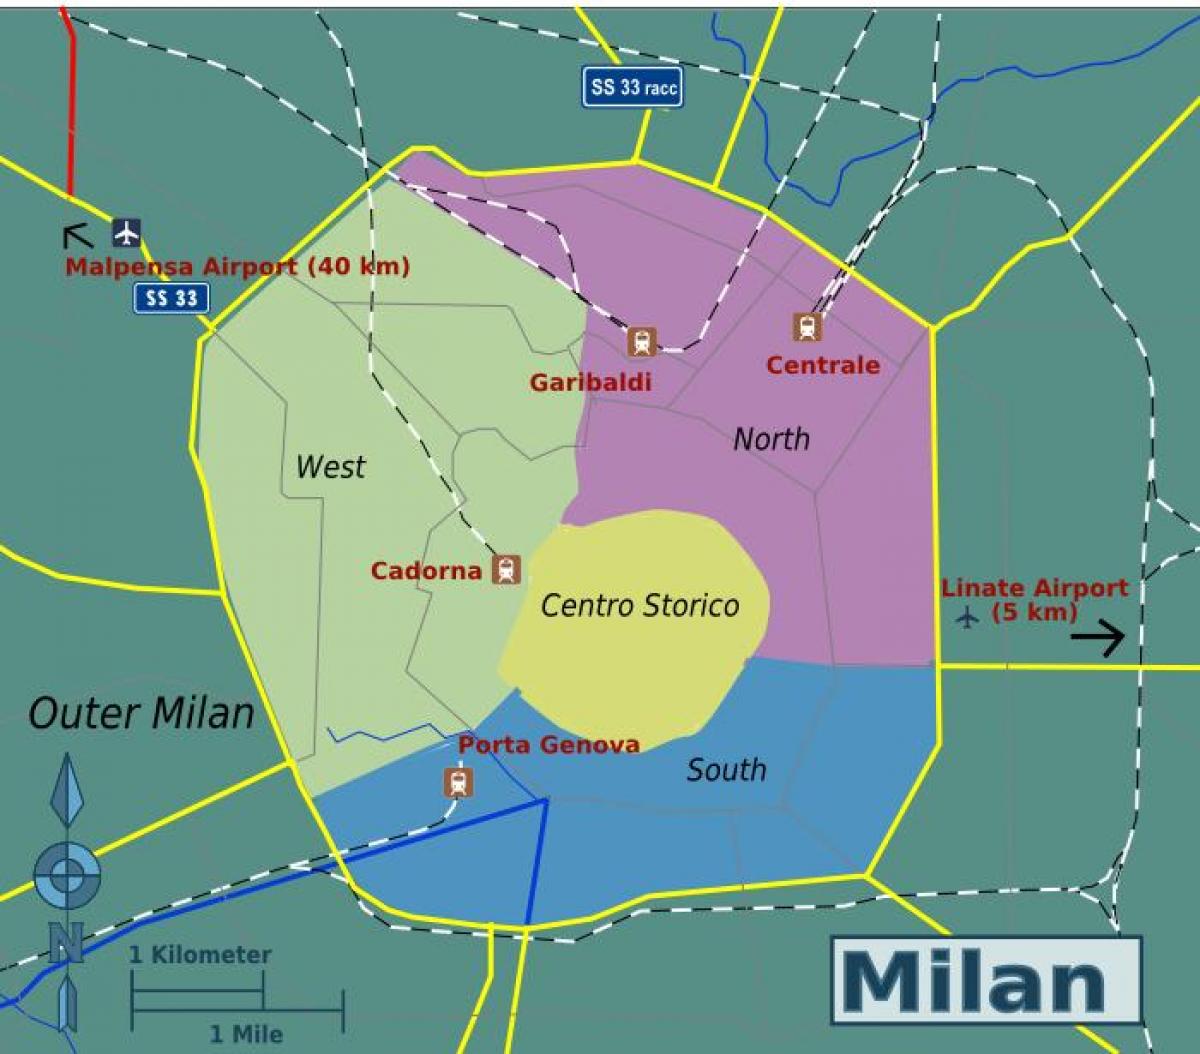 Mappa del quartiere di Milano